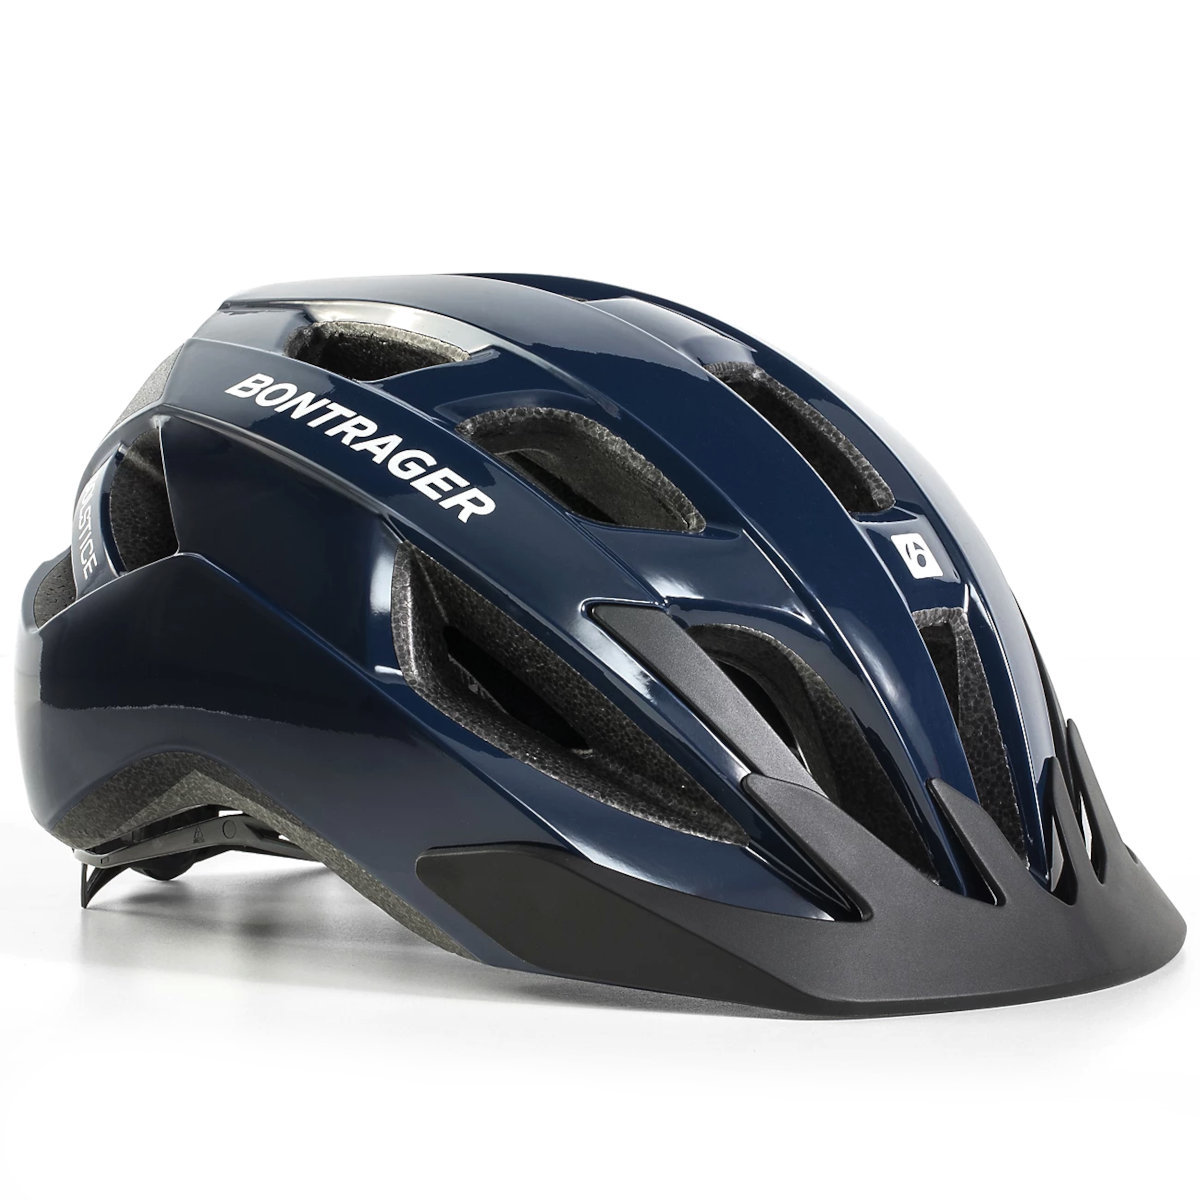 Picture of Bontrager Solstice Bike Helmet - navy